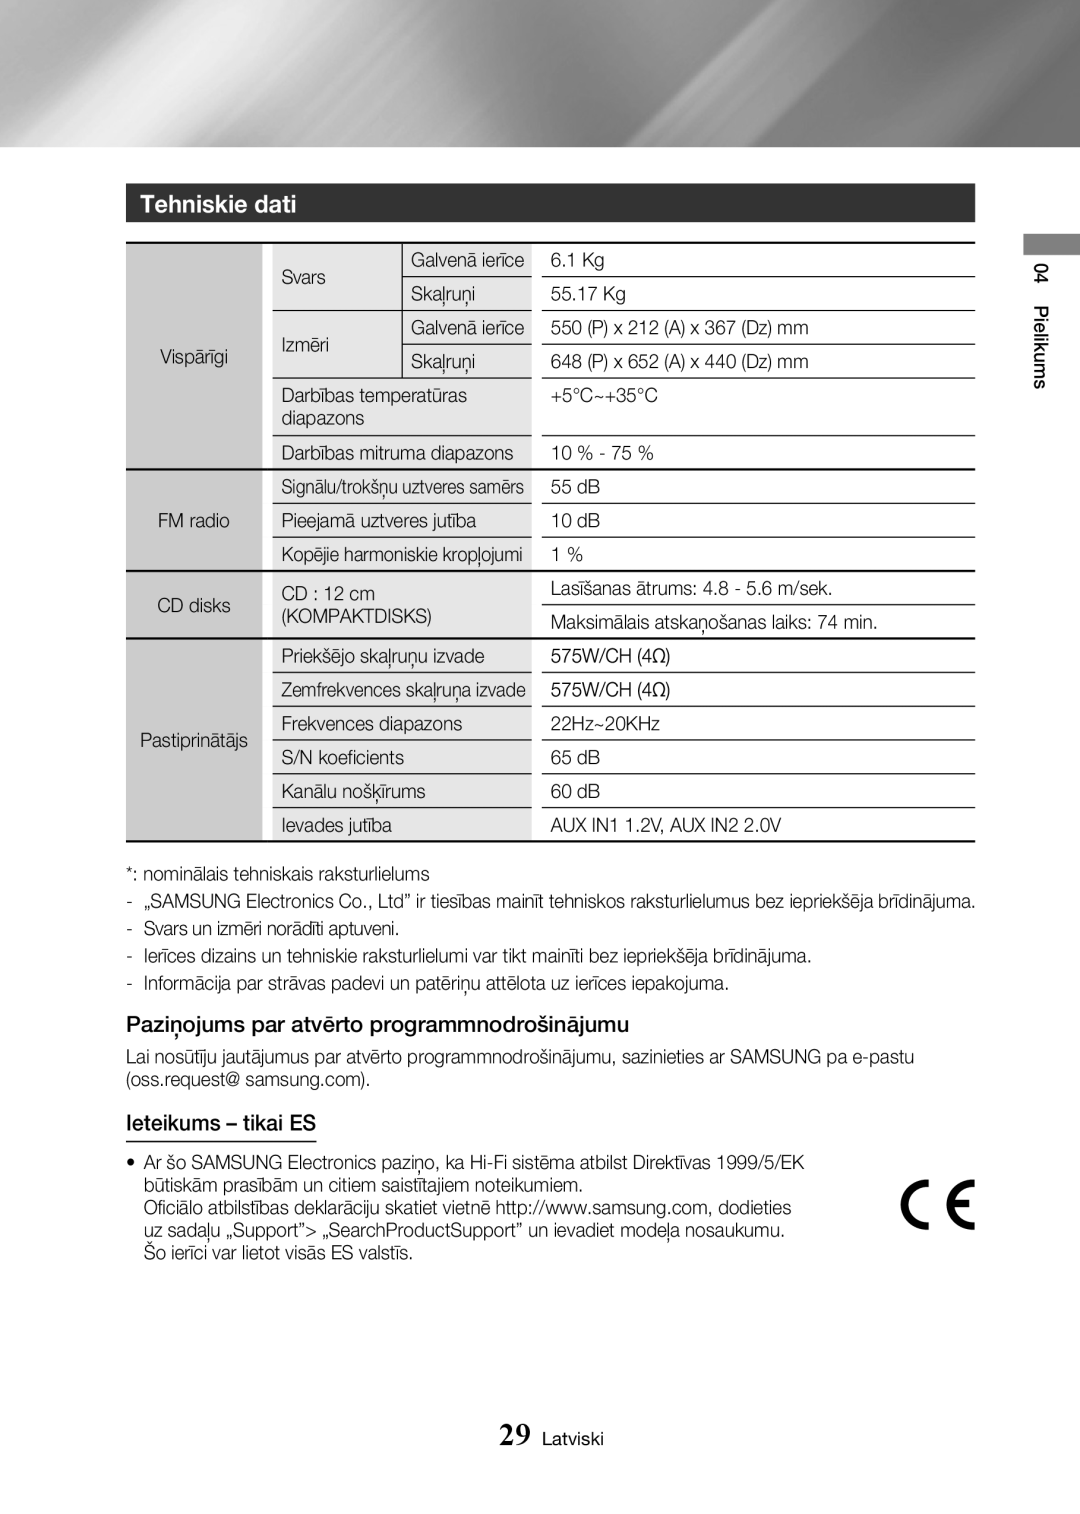 Samsung MX-HS8000/EN manual Tehniskie dati, Paziņojums par atvērto programmnodrošinājumu, Ieteikums - tikai ES 